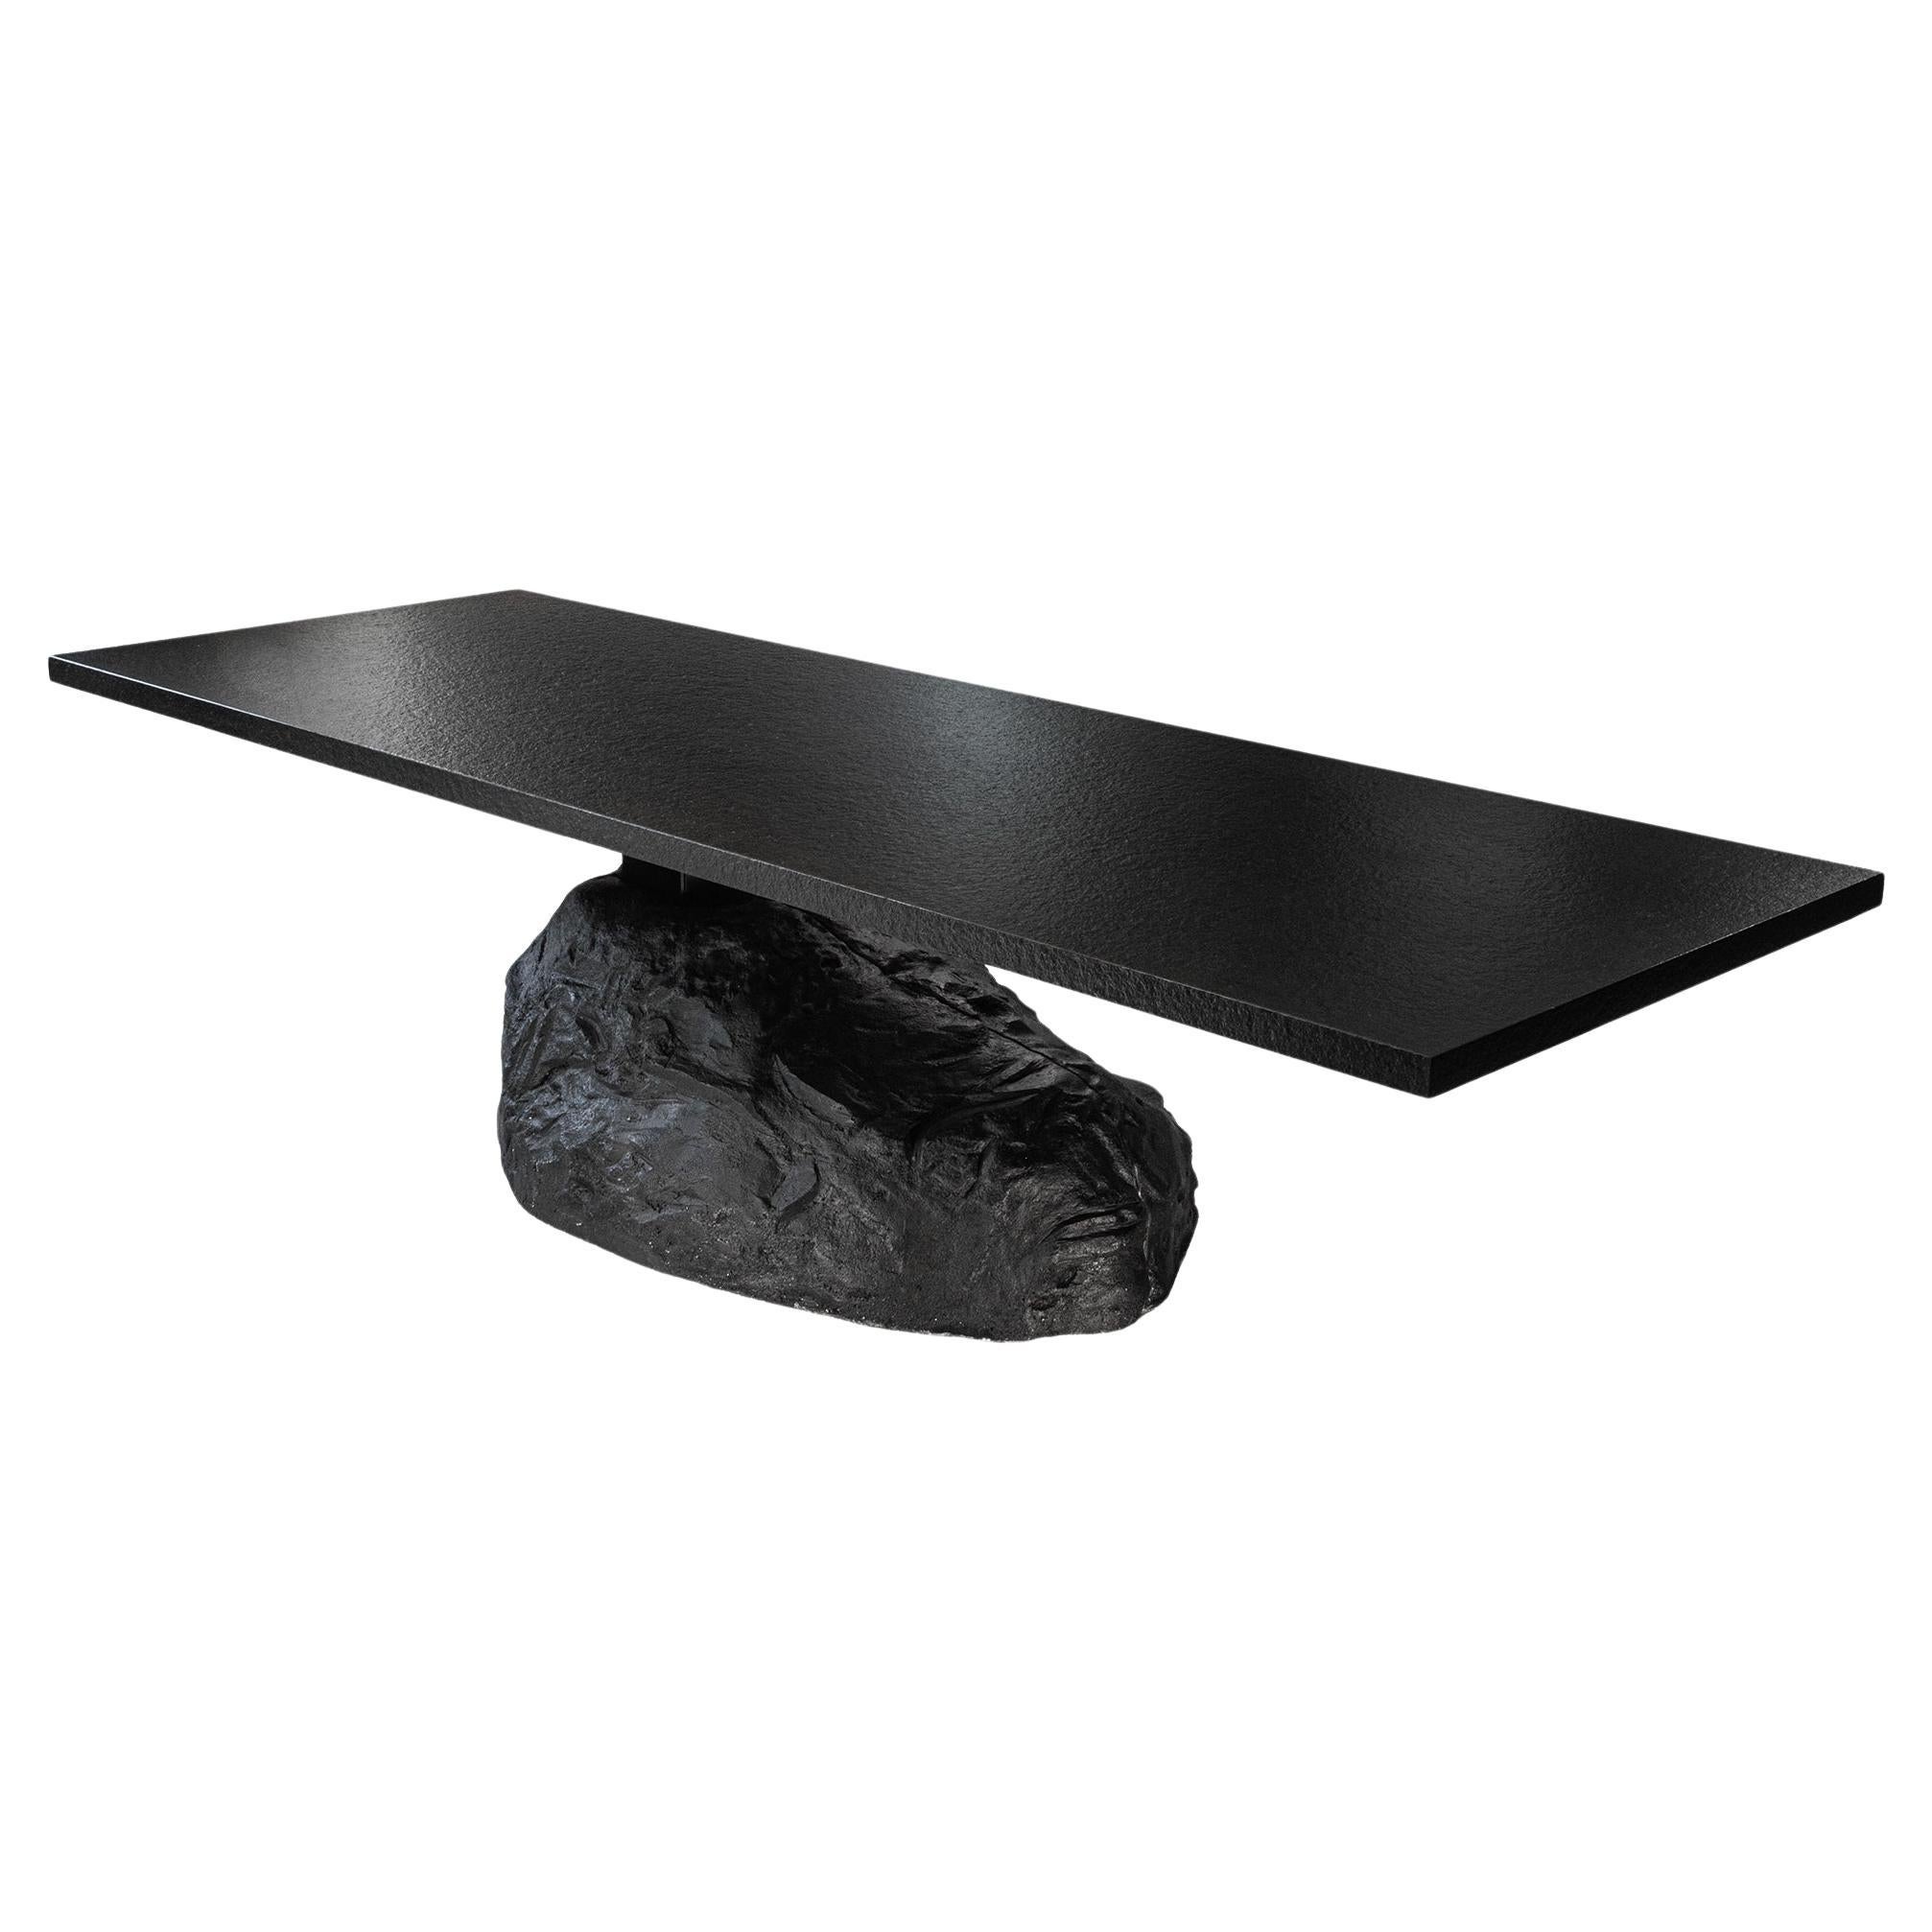 Organic Design Rock Boulder Shape Dining Table  For Sale